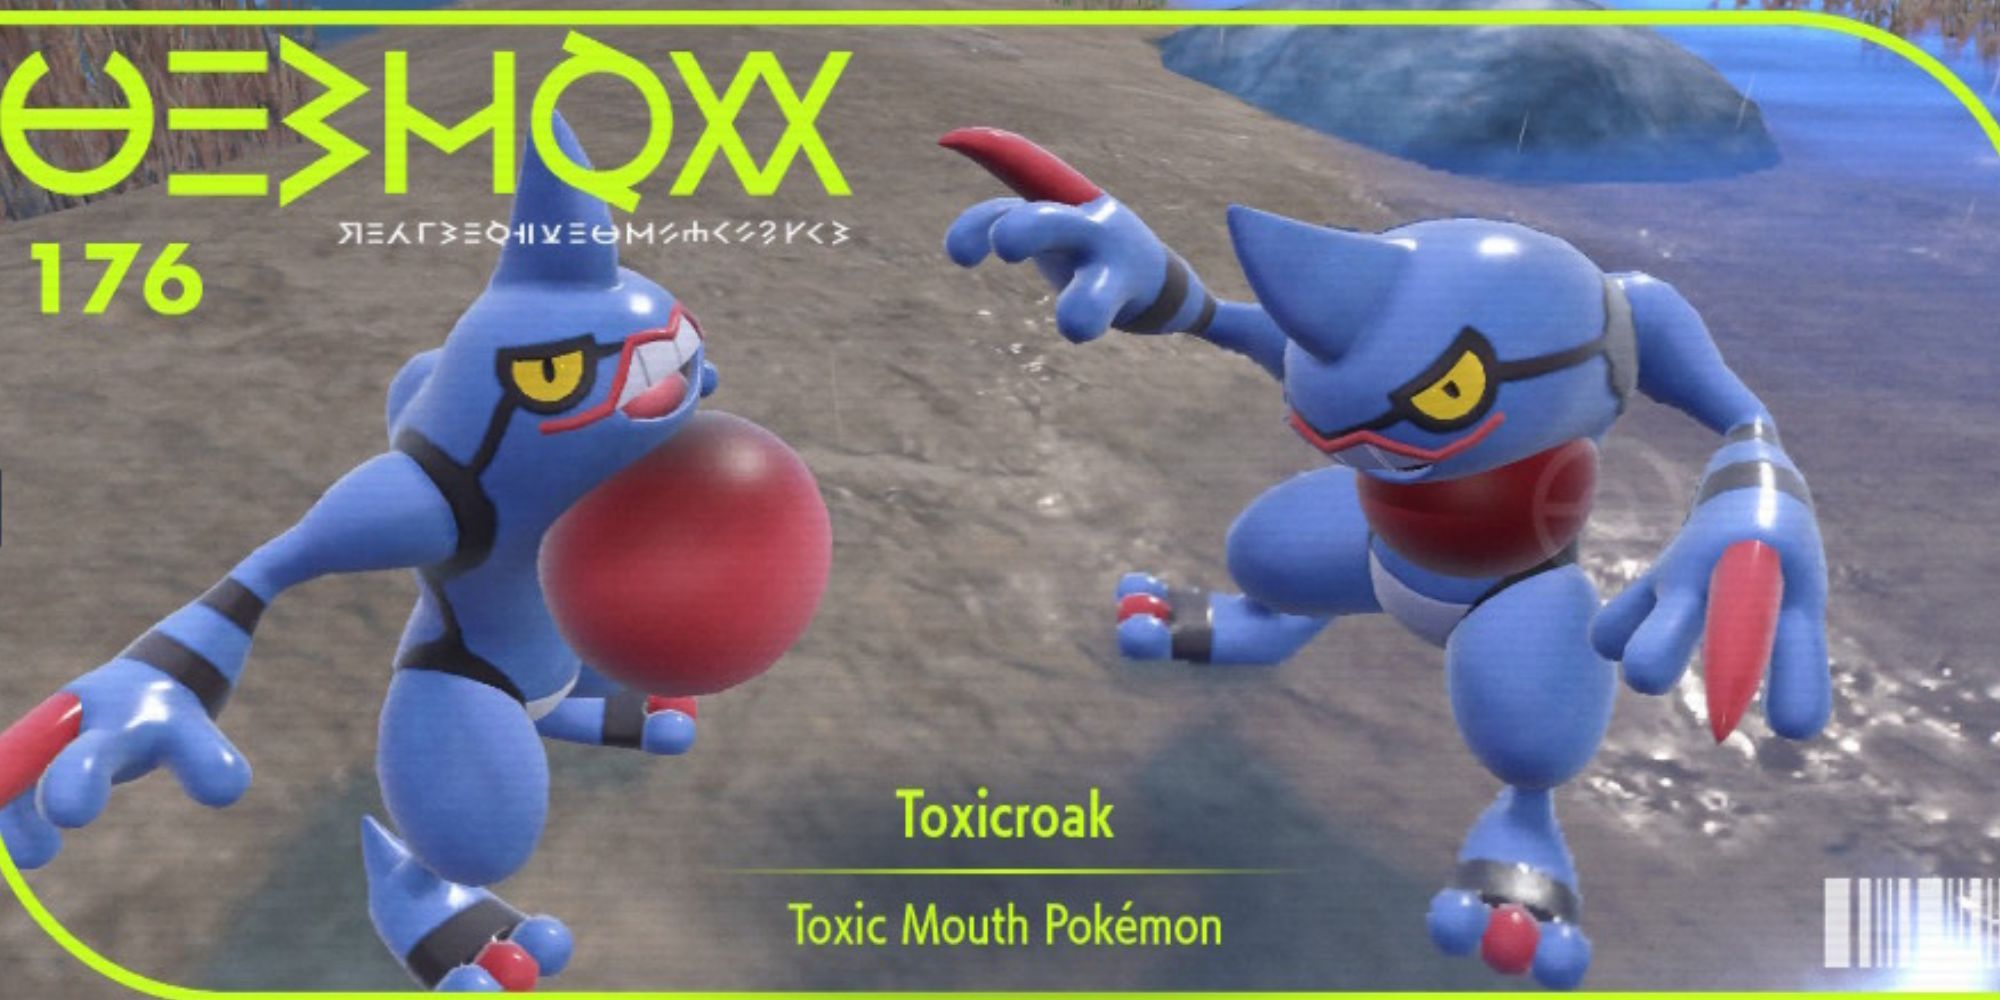 The pokedex cover image for Toxicroak in Pokemon Scarlet & Violet